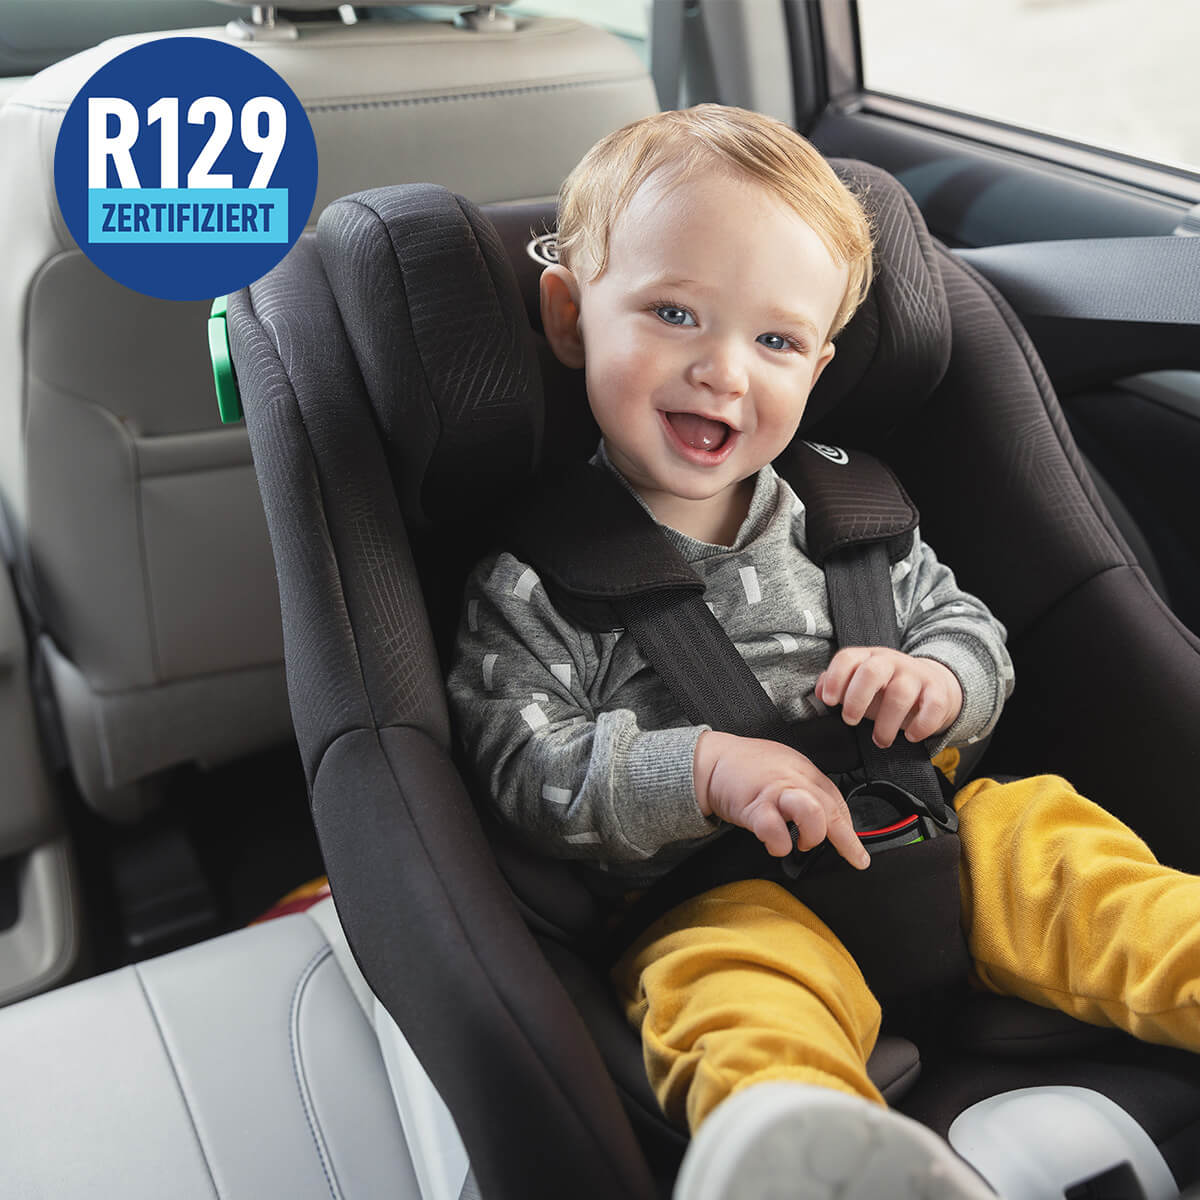 Glückliches Baby im Graco Extend LX R129 im Auto mit R129-zertifiziertem Logo.

